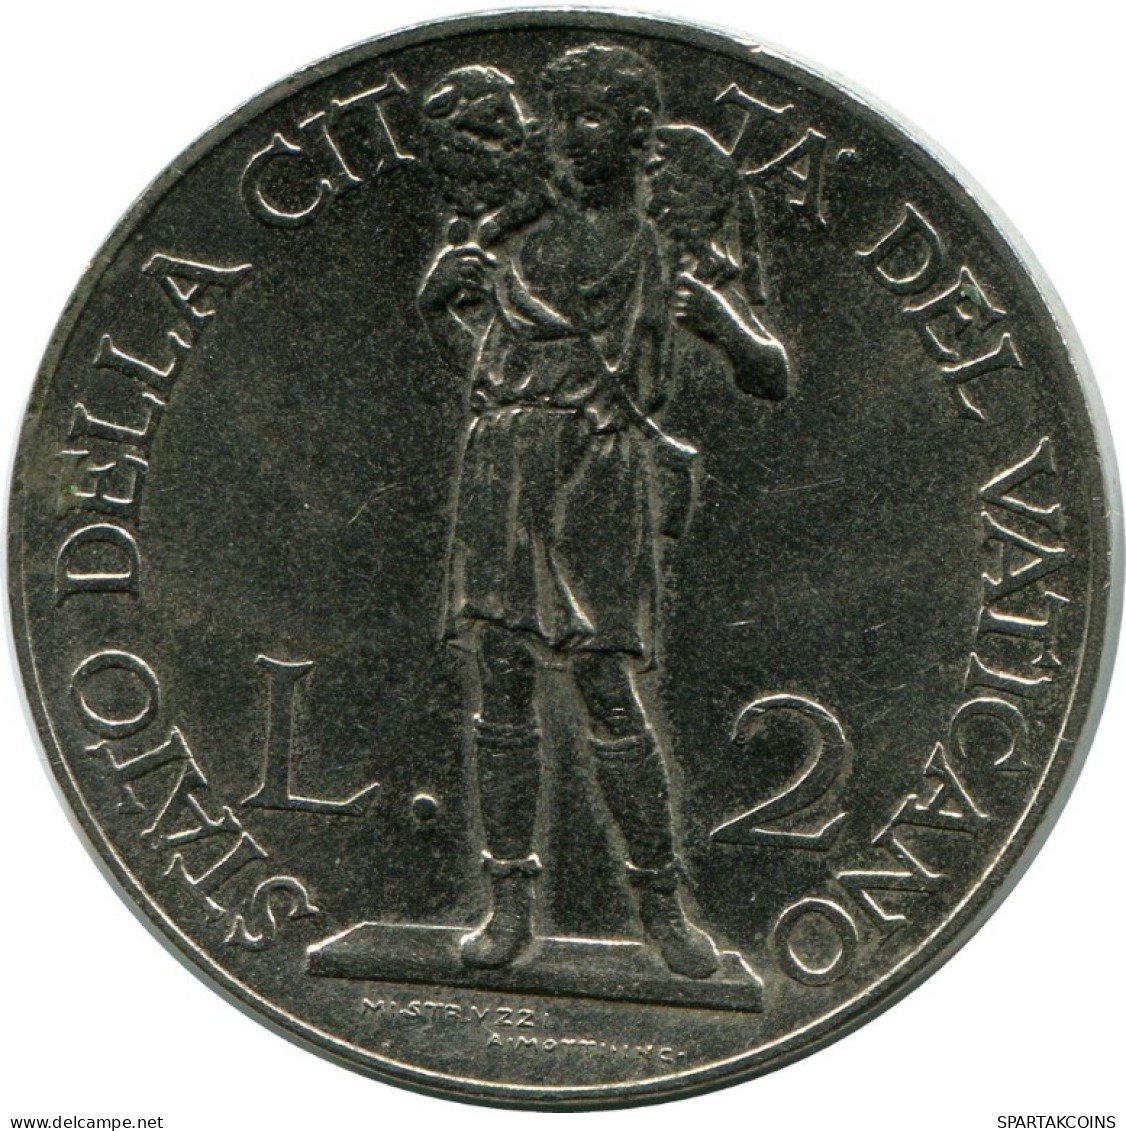 2 LIRE 1937 VATICAN Coin Pius XI (1922-1939) #AH300.16.U.A - Vatikan